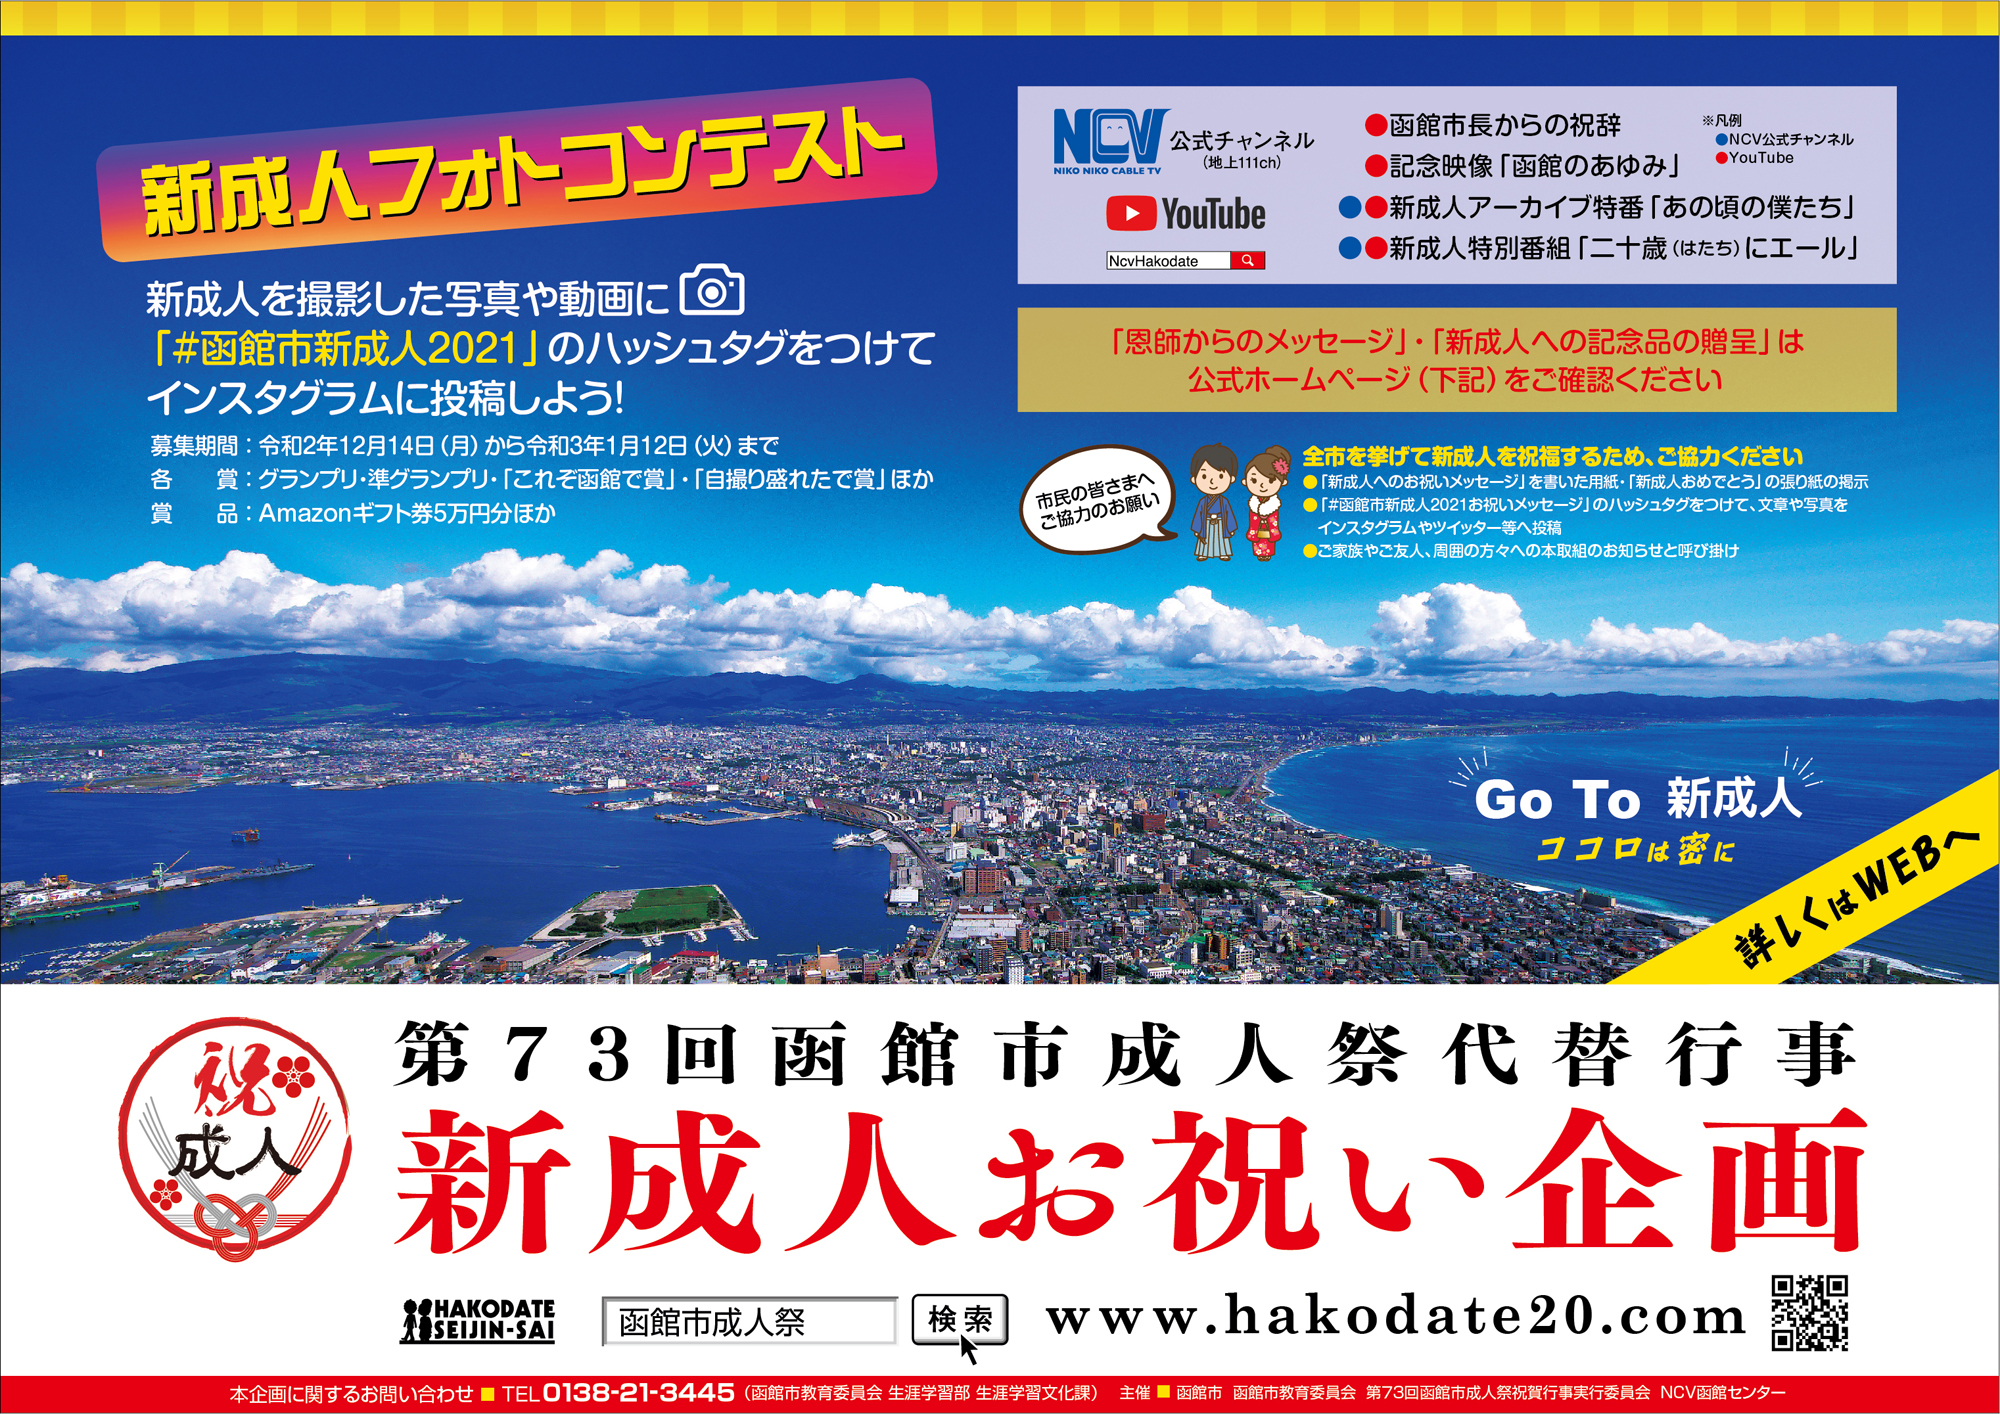 新成人お祝い企画 函館市成人祭 成人式 公式ウェブサイト